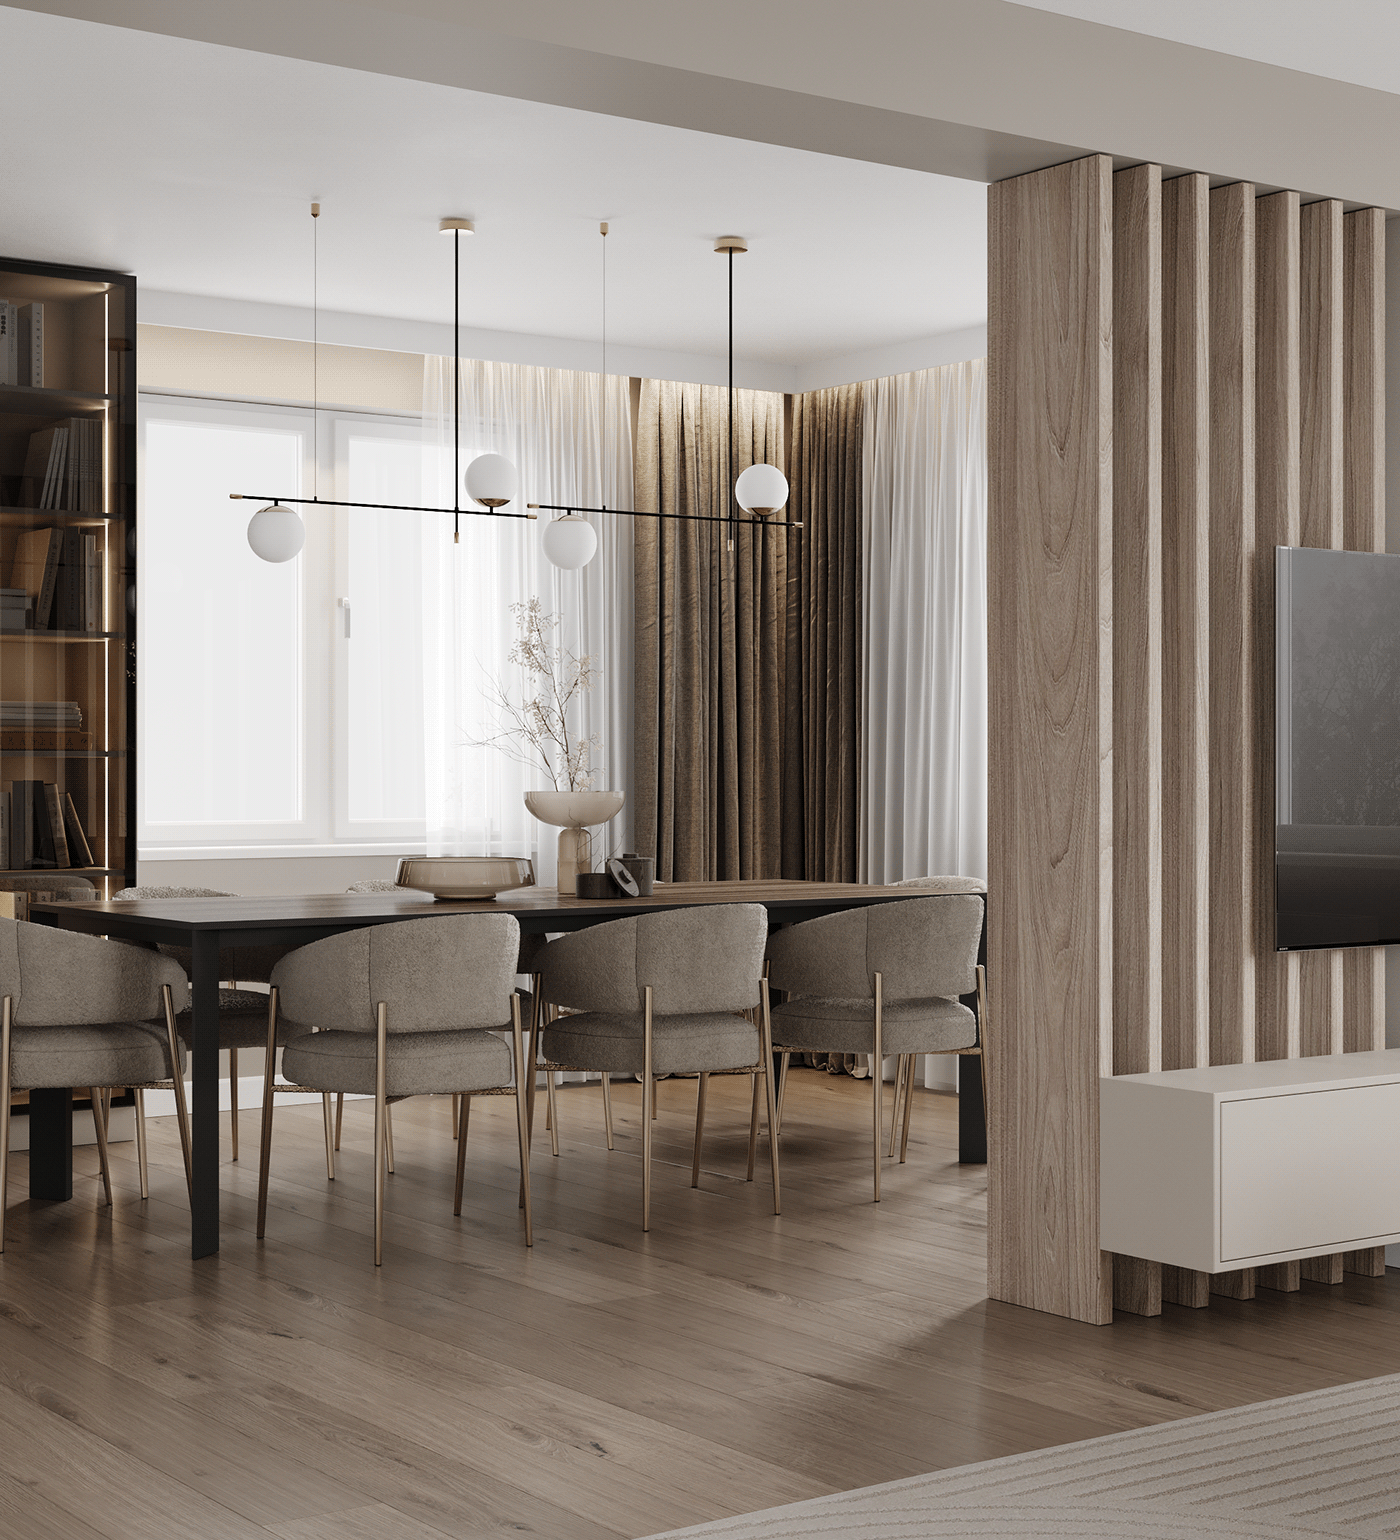 house interior design  modern visualization furniture design  wood Interior LUXURYHOUSE warminterior warmminimalism